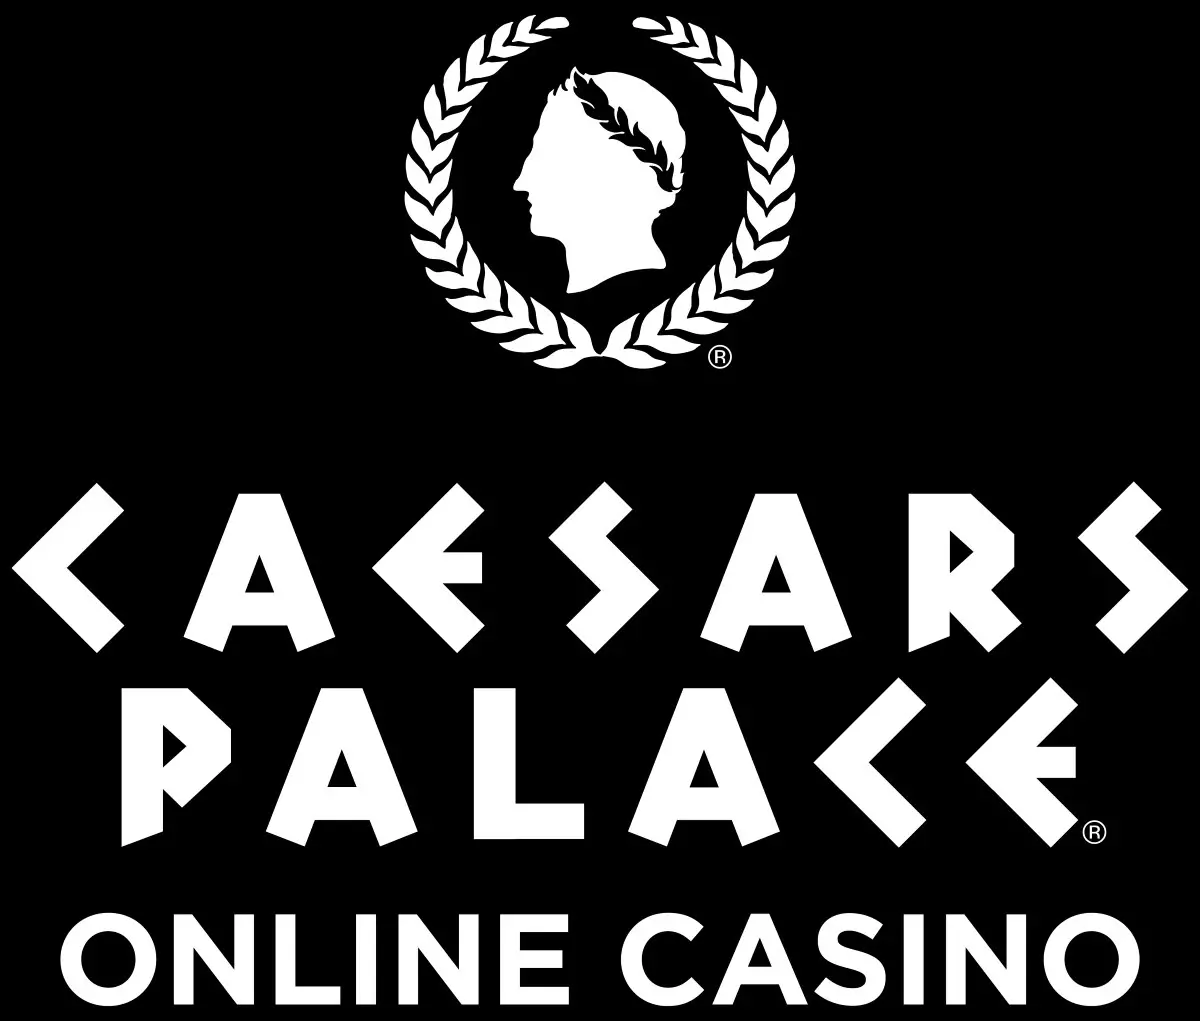 A Caesars Palace Online Casino a michigani DGC vel mukodik egyutt jpg